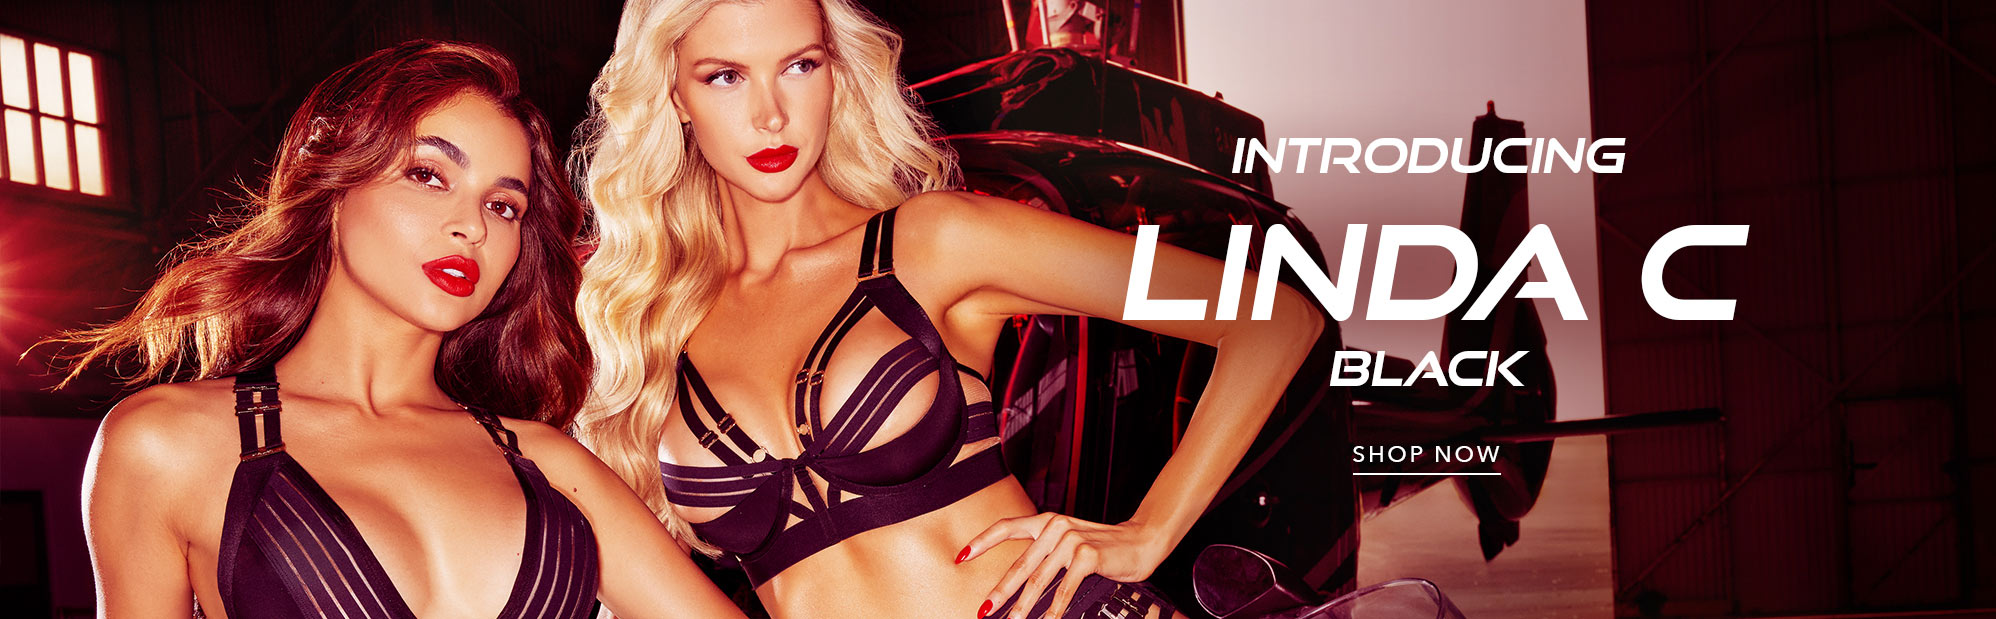 Shop luxury Honey Birdette lingerie online. Shop Push up bras, lace bras, briefs, thongs, loun...